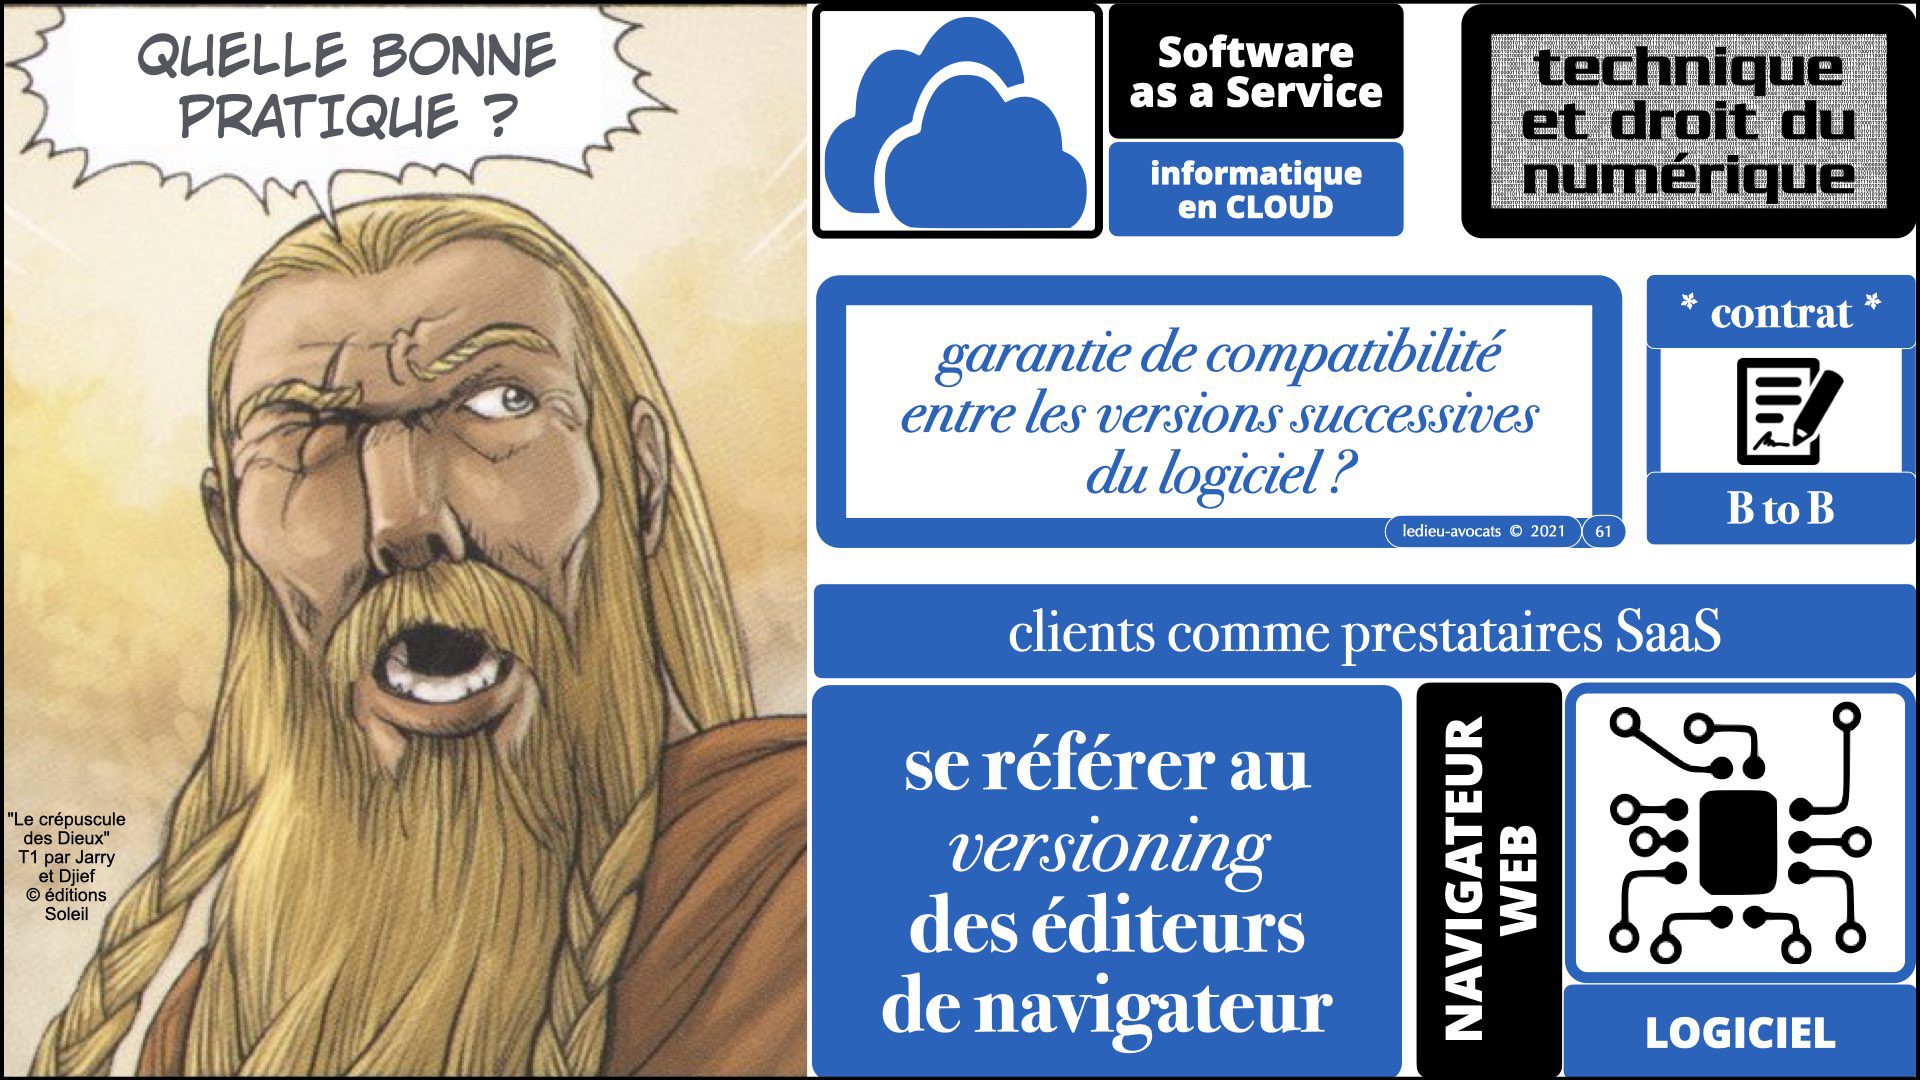 343 service LOGICIEL SaaS Software-as-a-Service cloud computing © Ledieu-Avocats technique droit numerique 30-08-2021.061